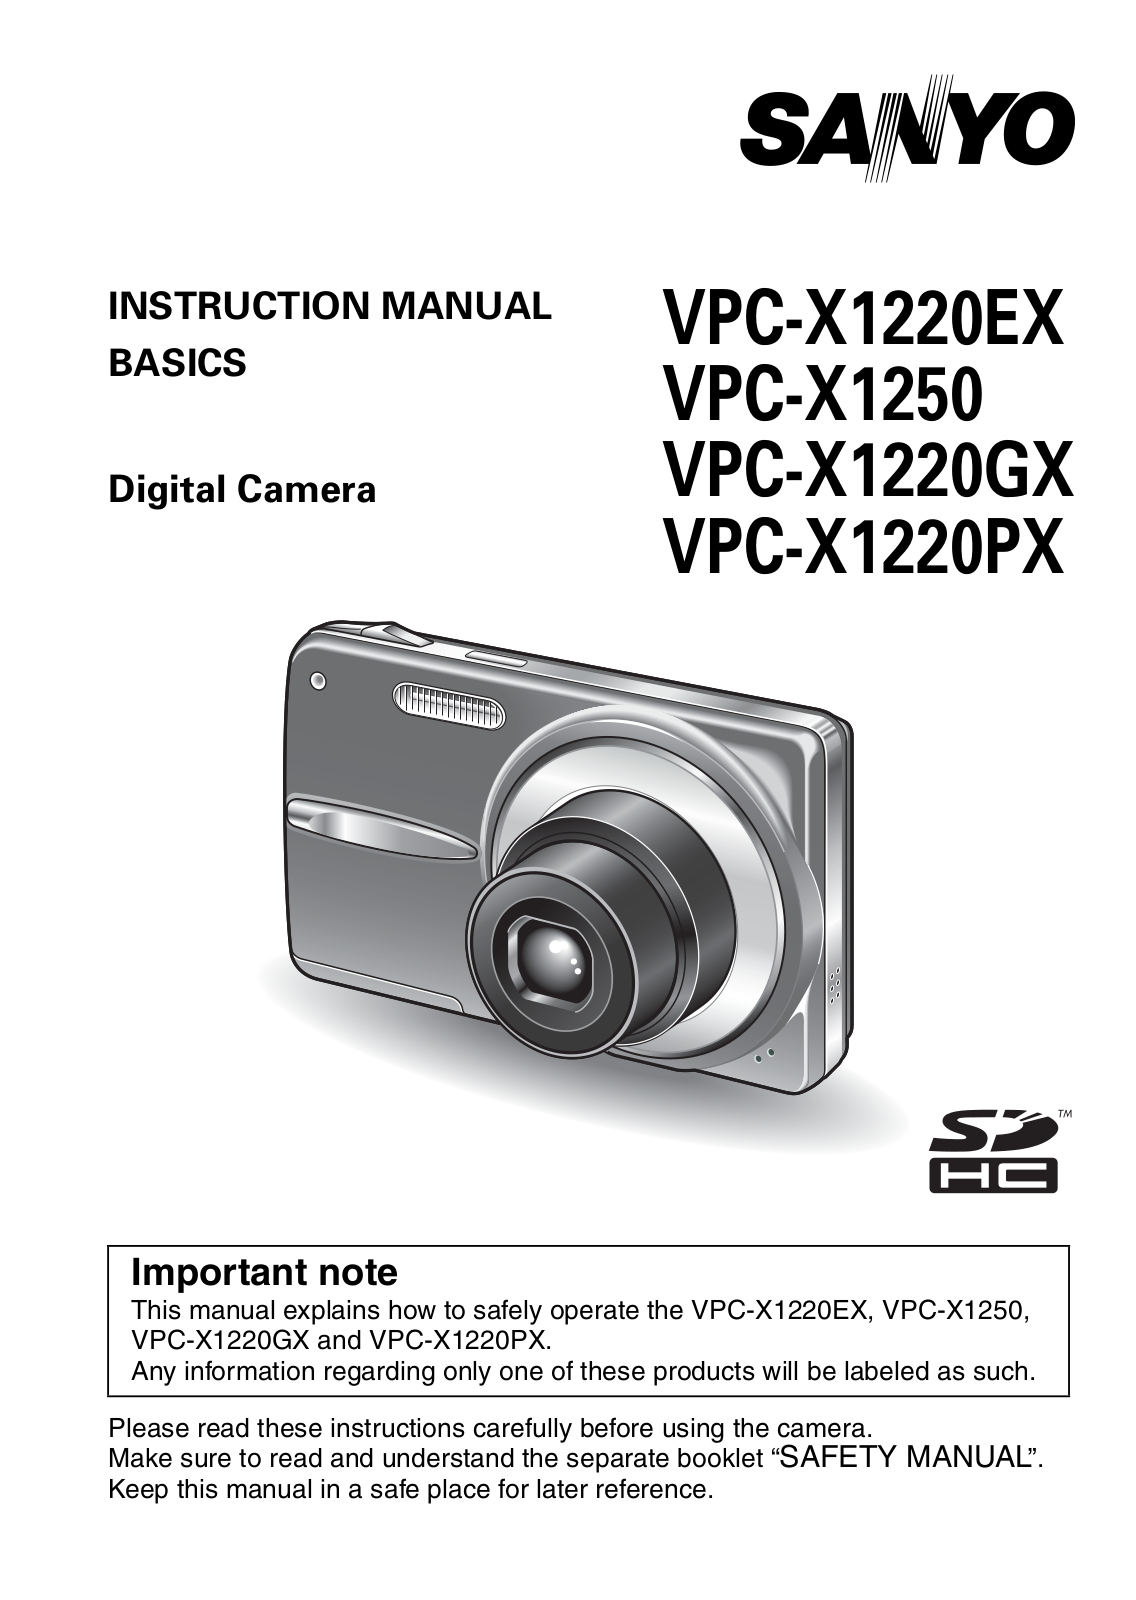 Sanyo VPC-S1220EX, VPC-S1220GX, VPC-S1220PX, VPC-S1250 Instruction Manual